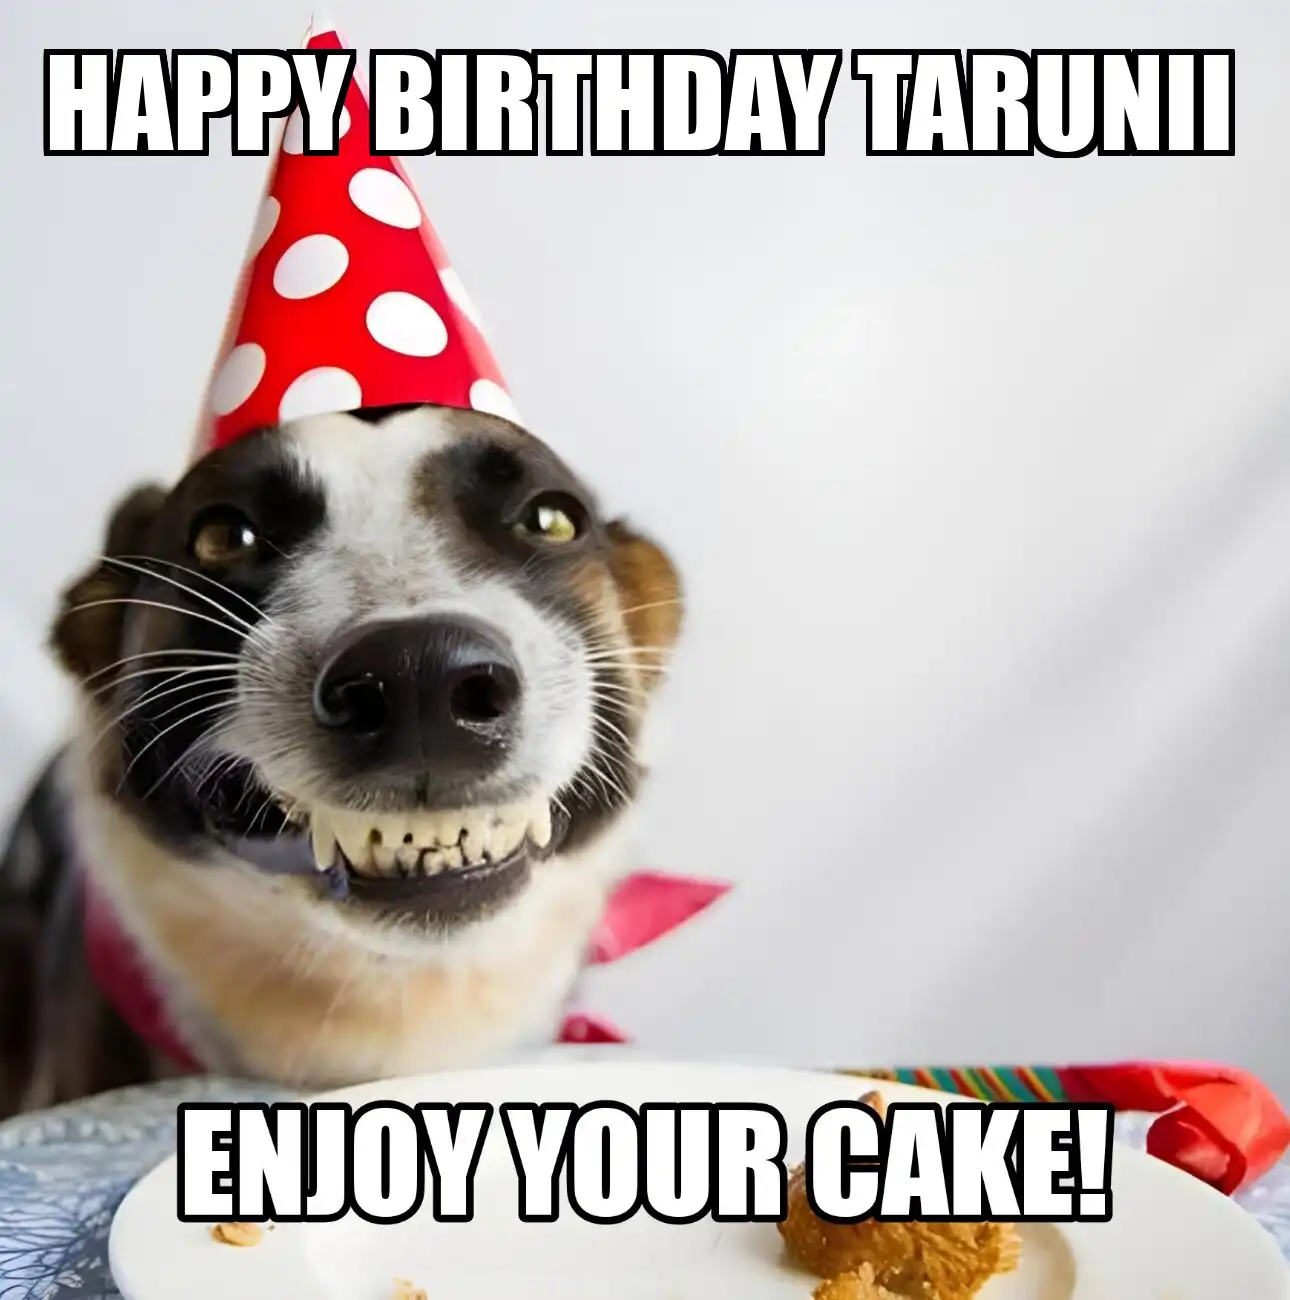 Happy Birthday Tarunii Enjoy Your Cake Dog Meme